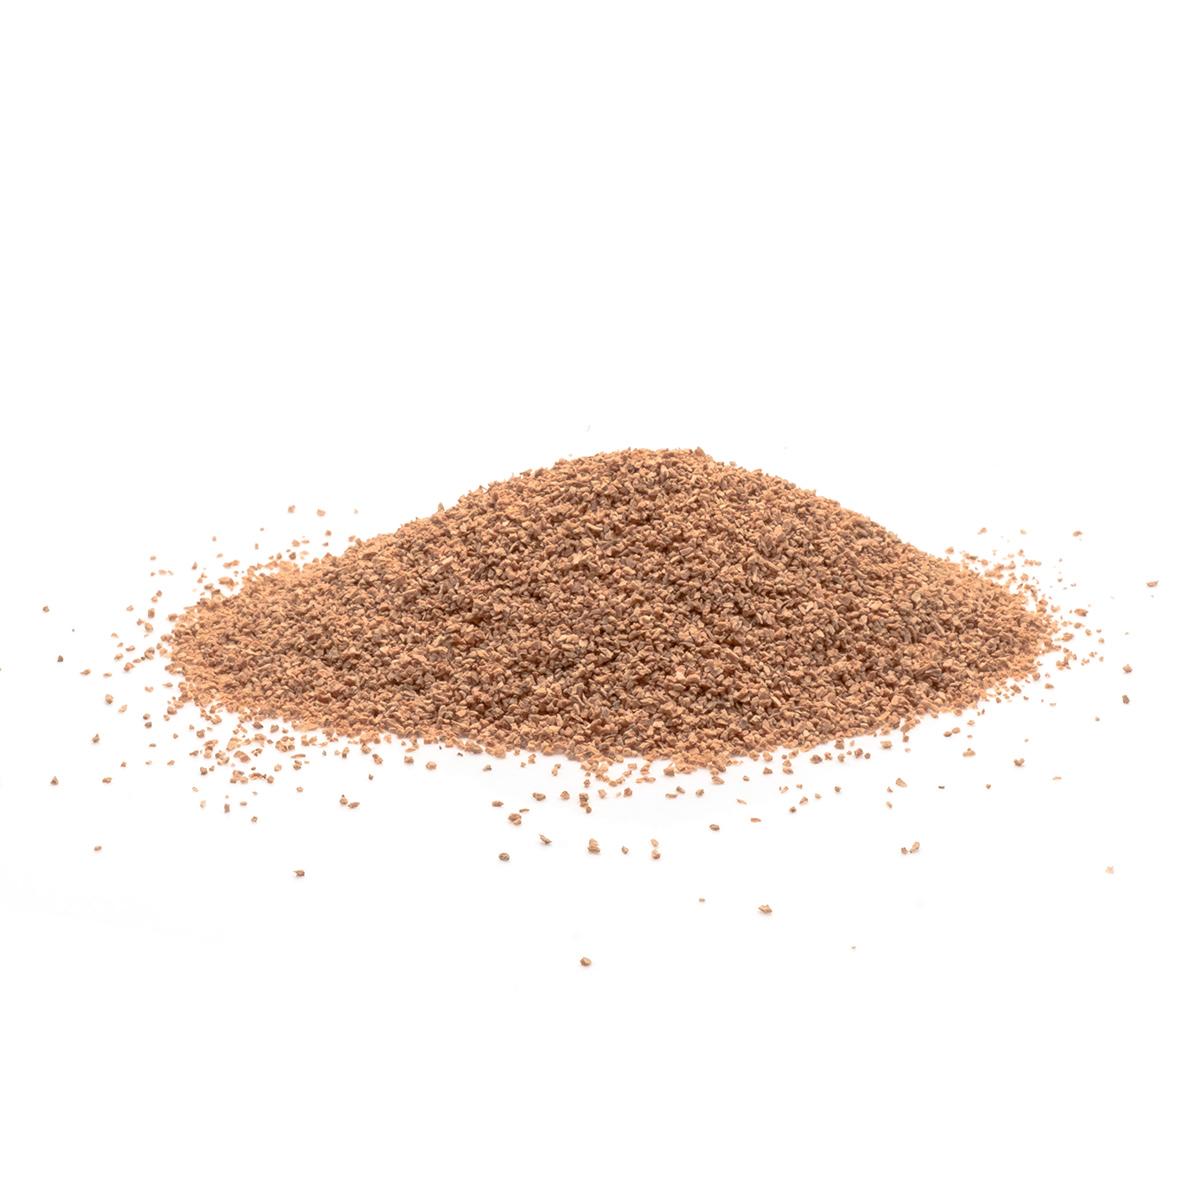 Cork Dust (Fine) Zoomed